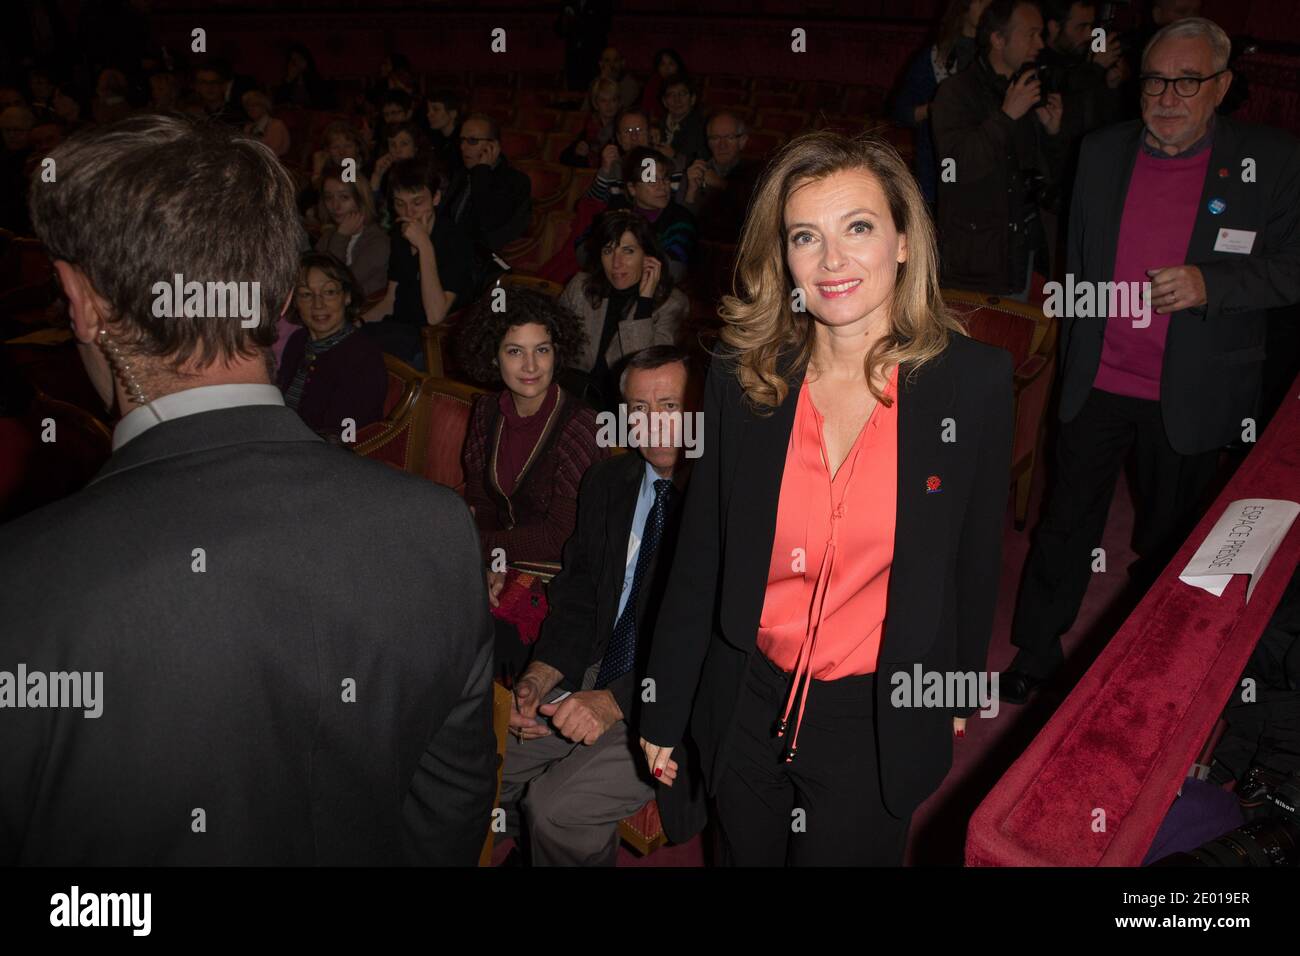 Nella foto di Valerie Trierweiler, il 22 novembre 2013, a Parigi, in Francia, uscì dalla cerimonia del 'Prix Danielle Mitterrand 2013'. Foto di Romain boe/ABACAPRESS.COM Foto Stock